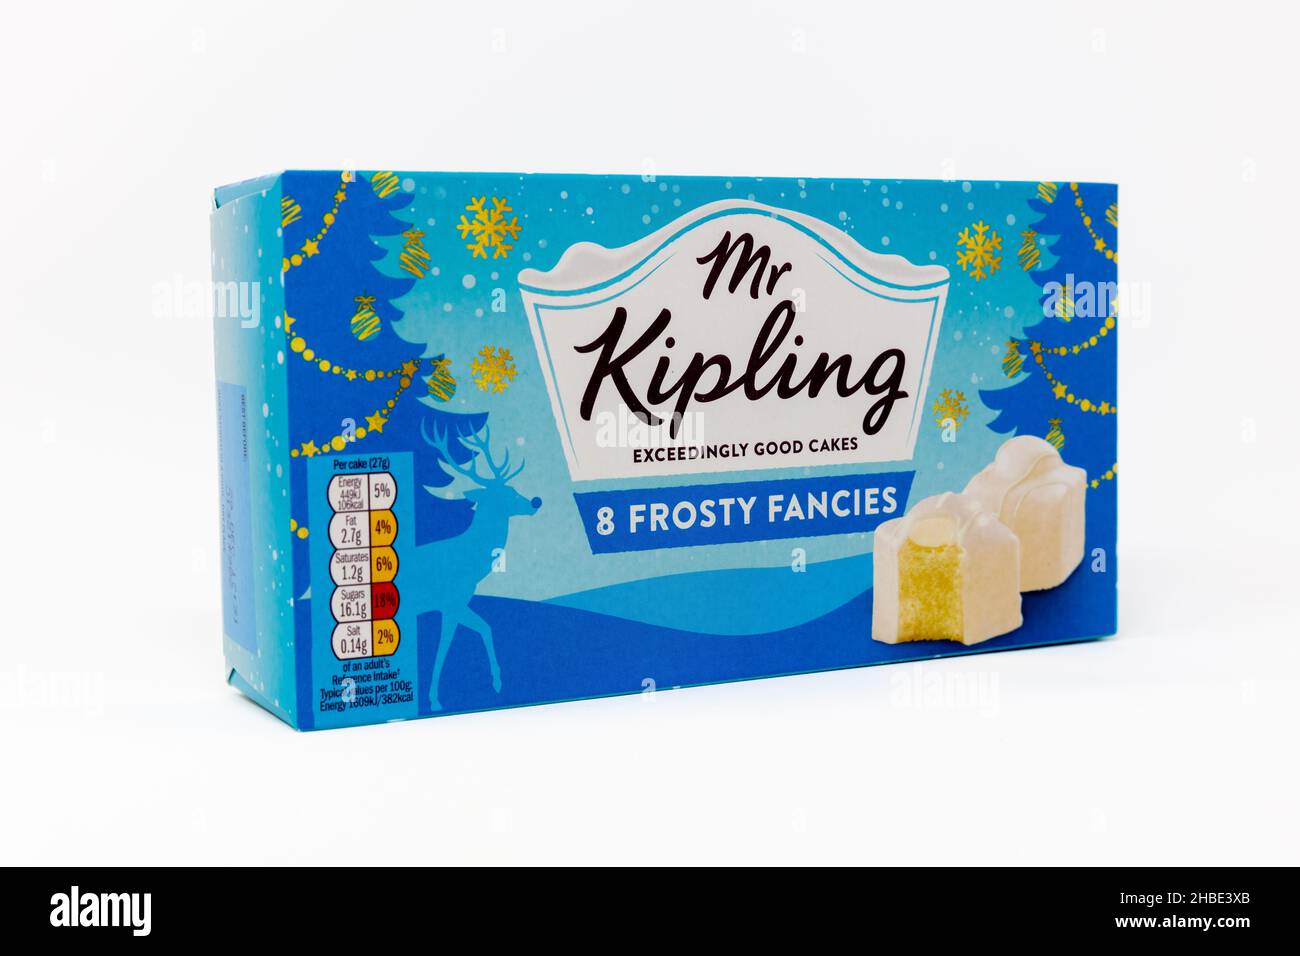 Mr Kipling 8 Frosty Fancies Stock Photo